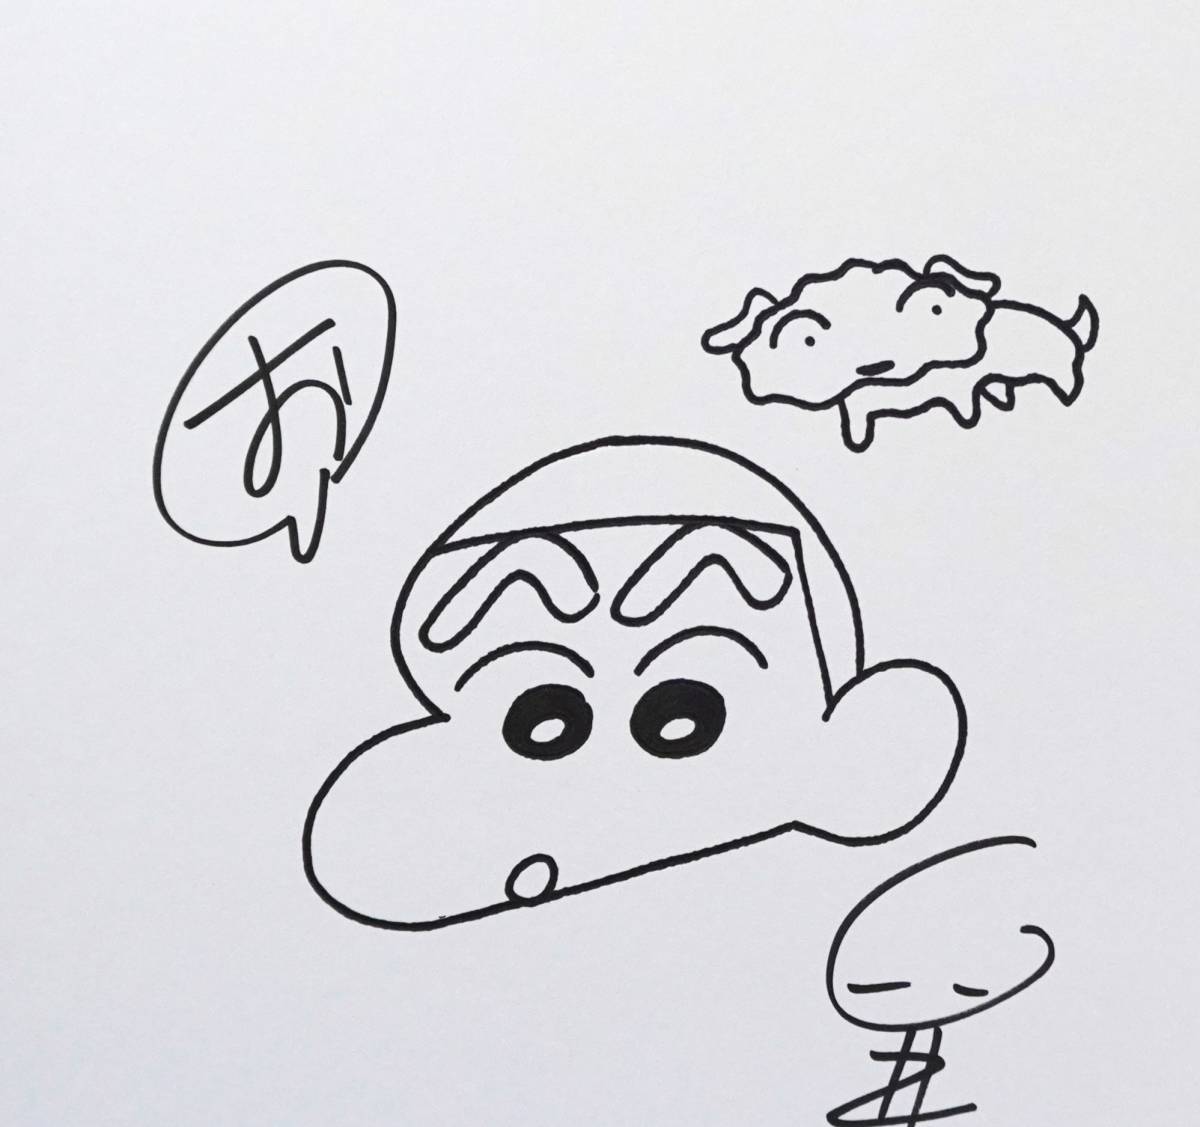 クレヨンしんちゃん 臼井儀人 色紙 漫画 Crayon Shinchan アニメ